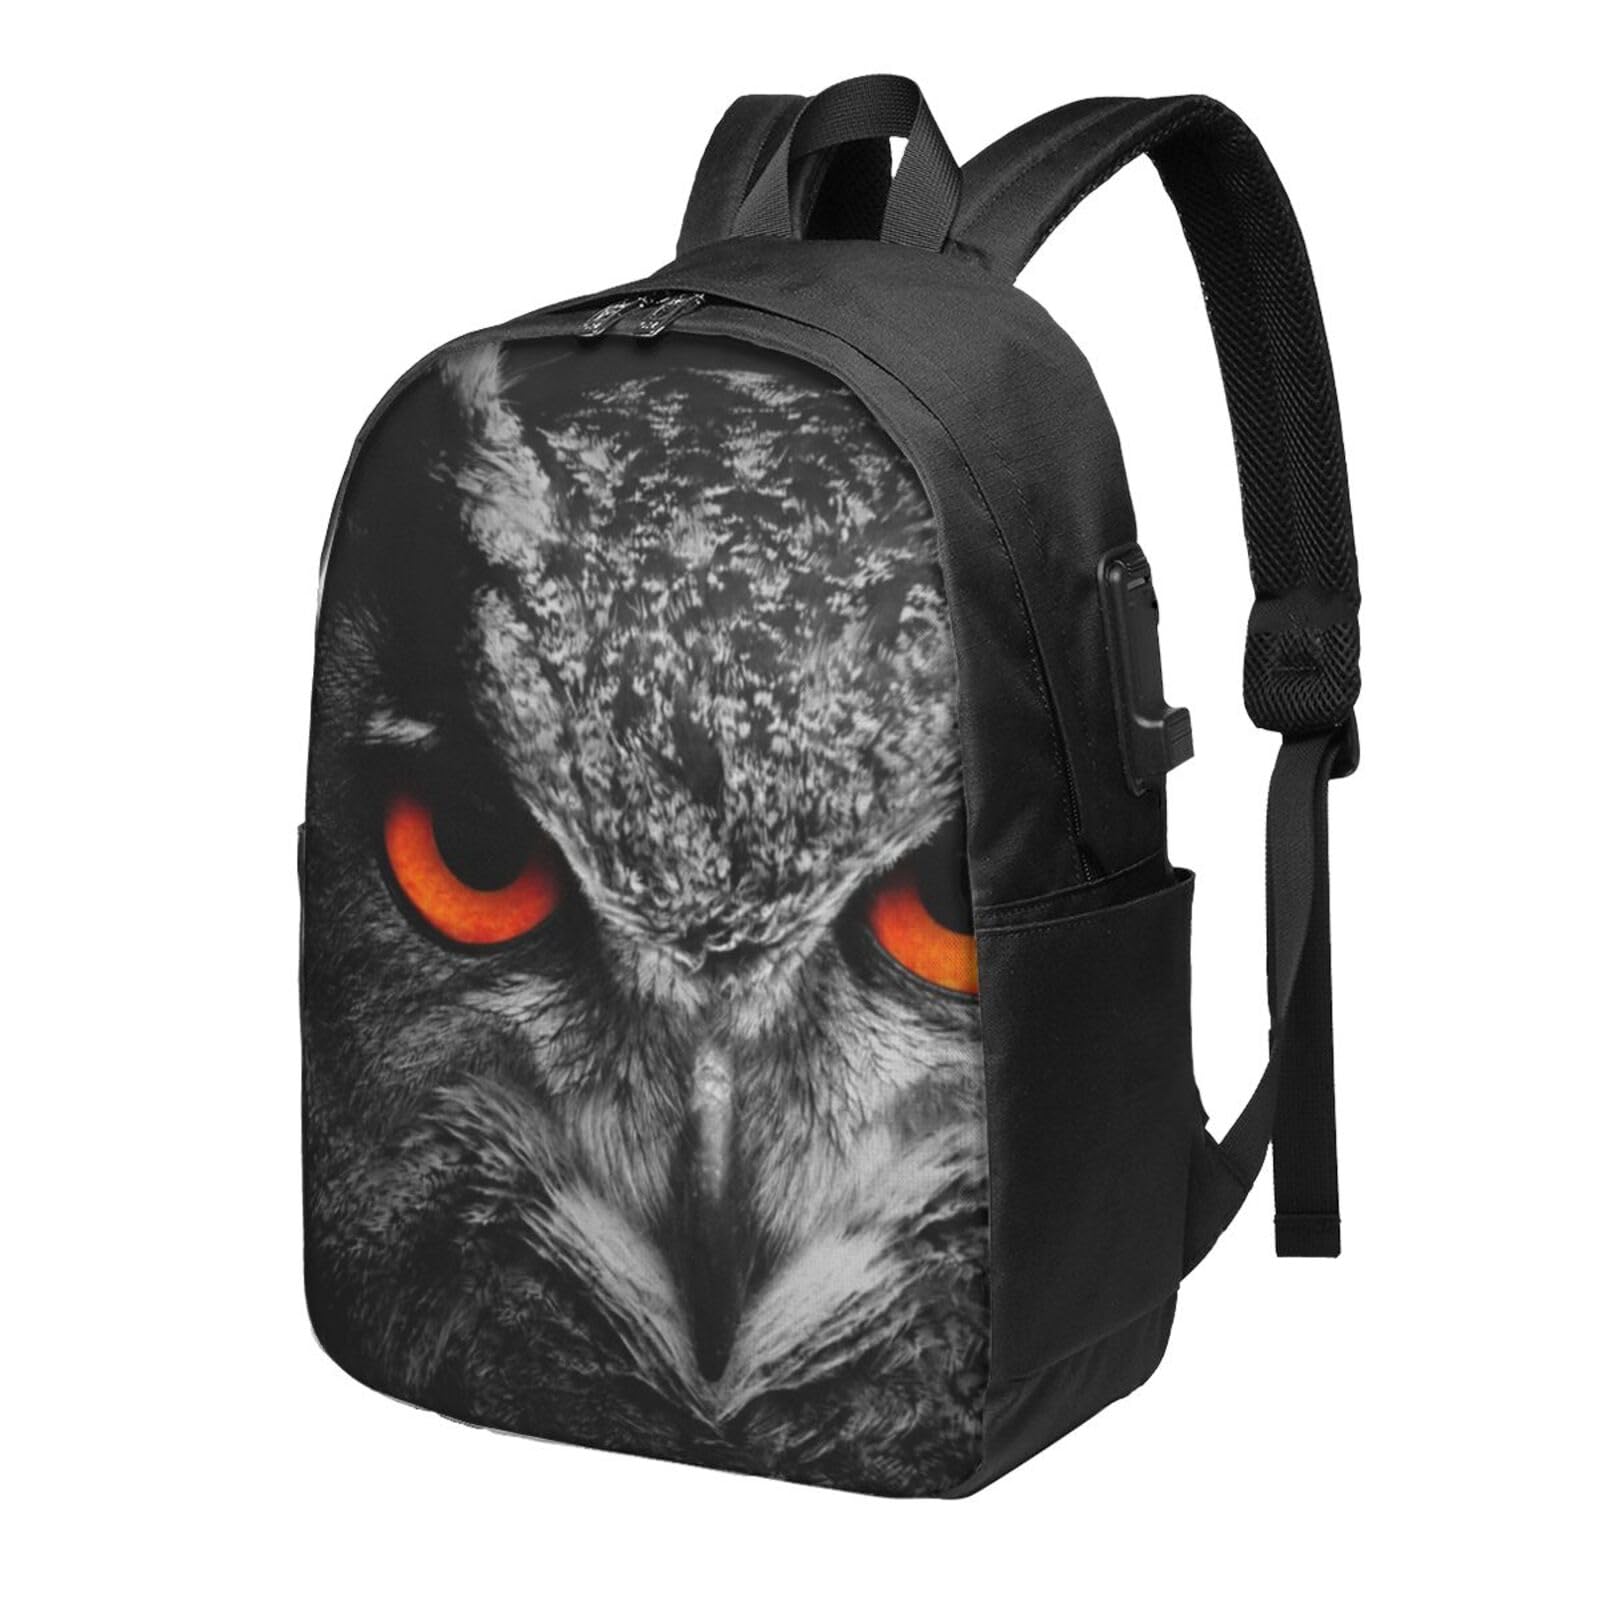 送料無料OUSIKA Owl Eyes Laptop Backpack With Usb Charging Port Water Resistant Casual Daypacks Travel Bag For Men Women